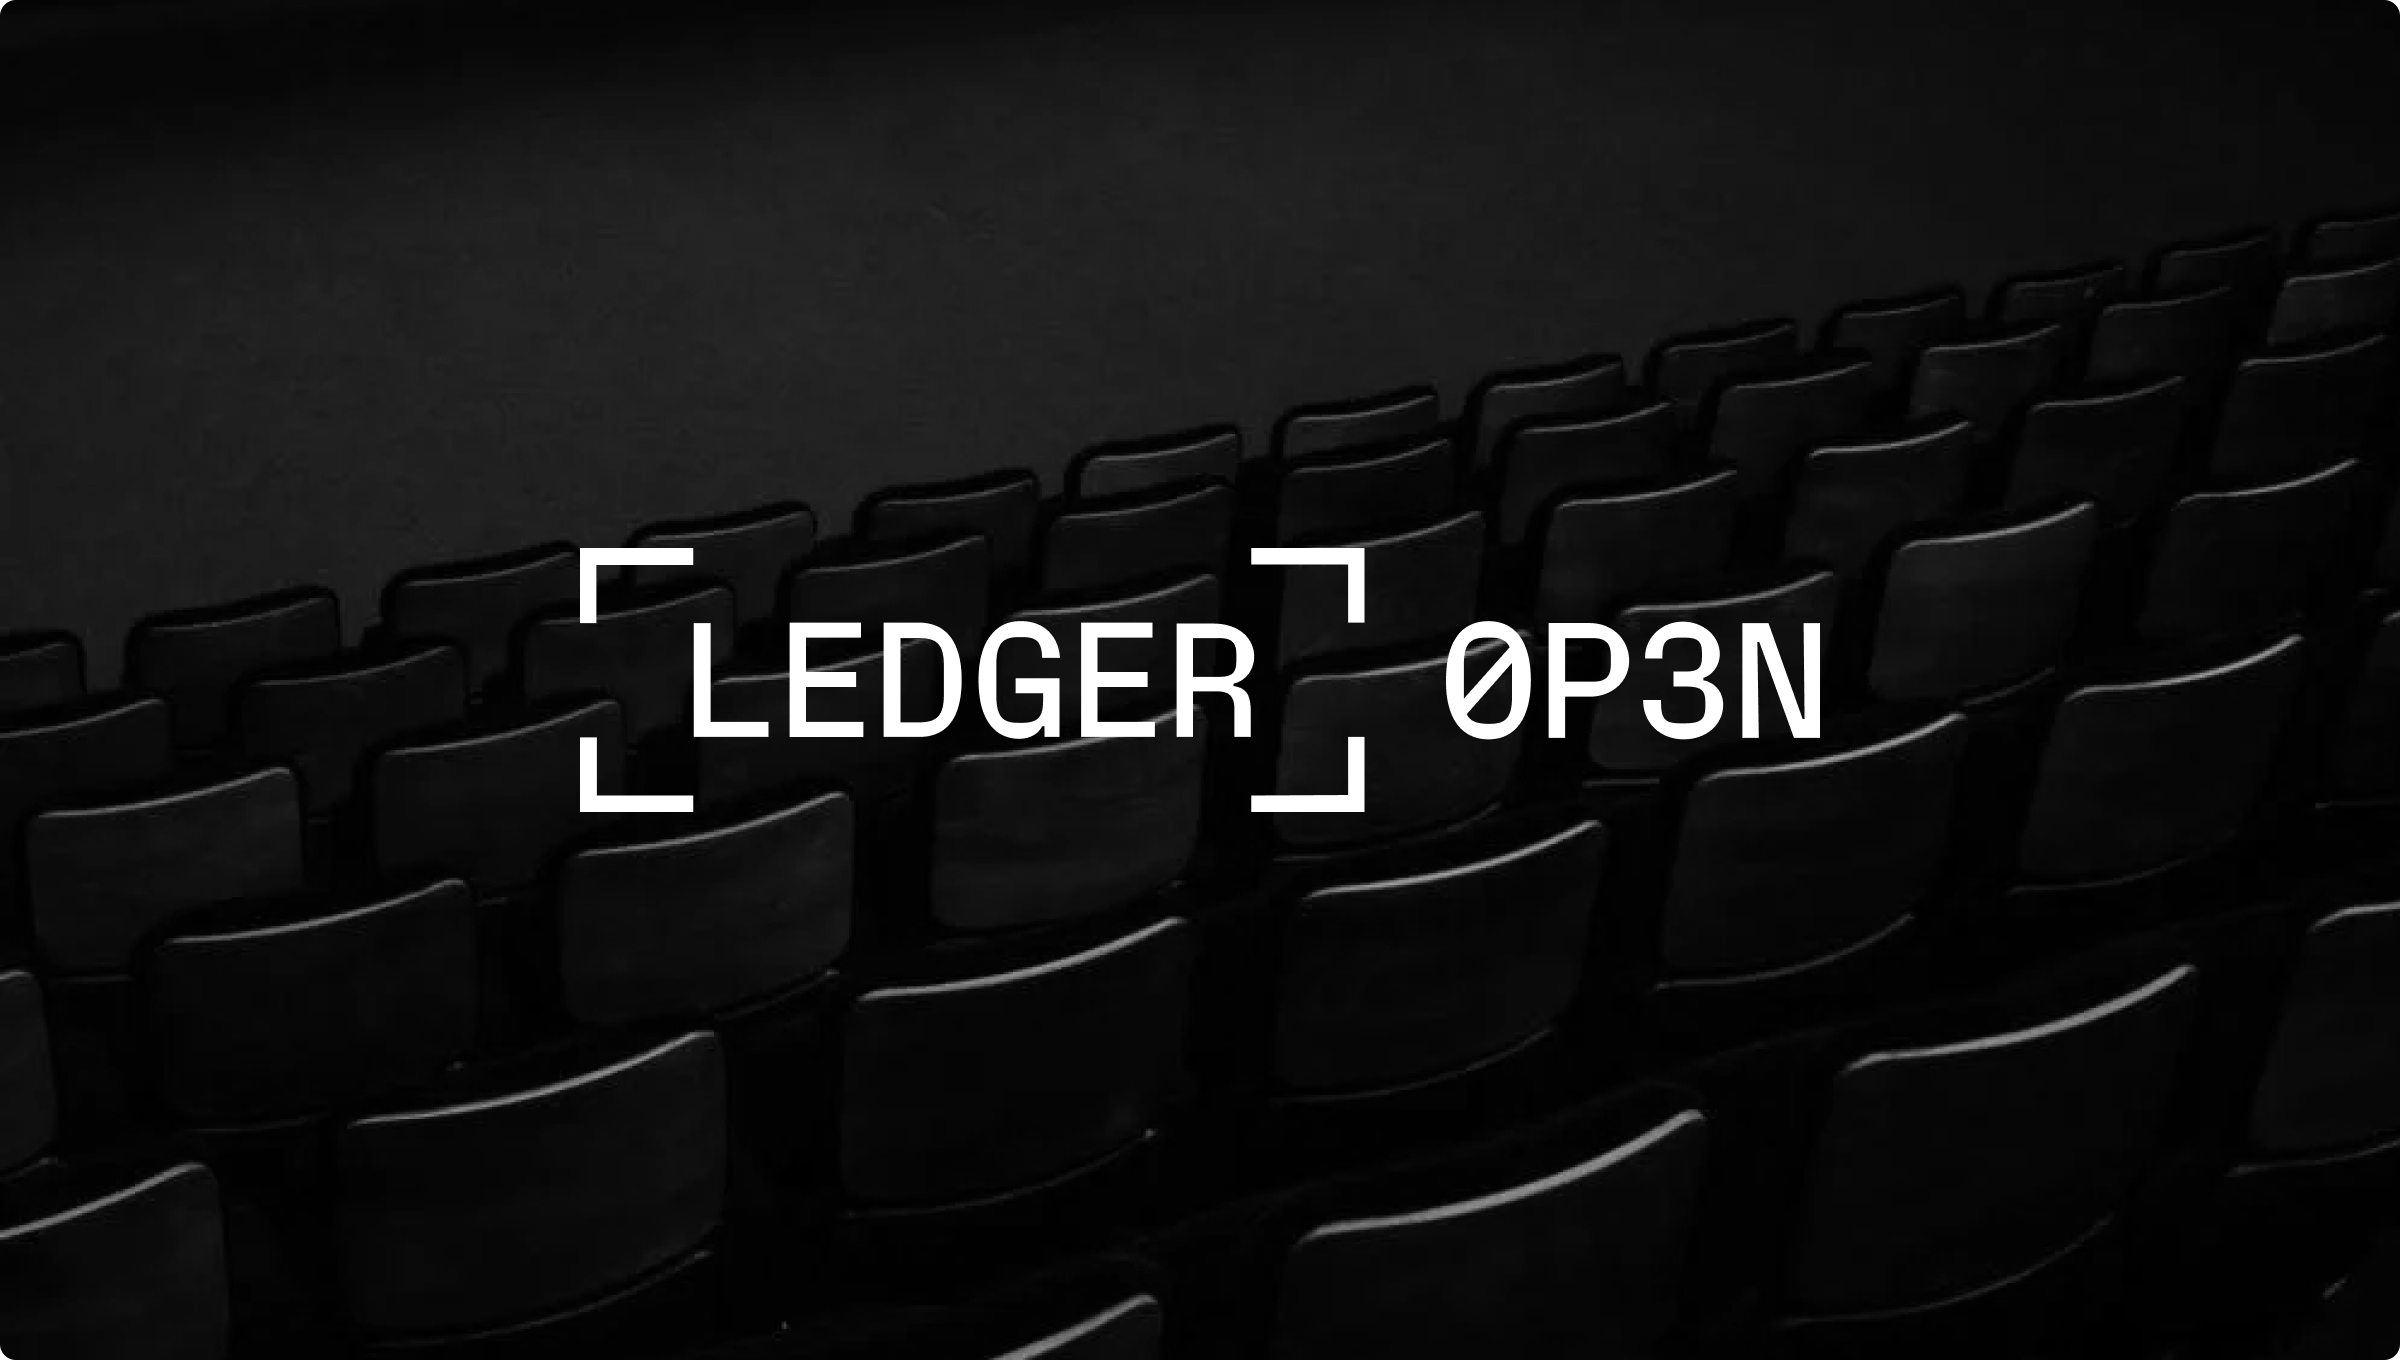 Ledger سوف تكشف النقاب عن مجموعة واسعة من منتجات أمان ويب 3.0 المبتكرة بما في ذلك السوق التجاري الجديد المصمم بالأخص للرموز غير القابلة للاستبدال (NFT)، في مؤتمر Ledger Op3n خلال فعاليات NFT.NYC